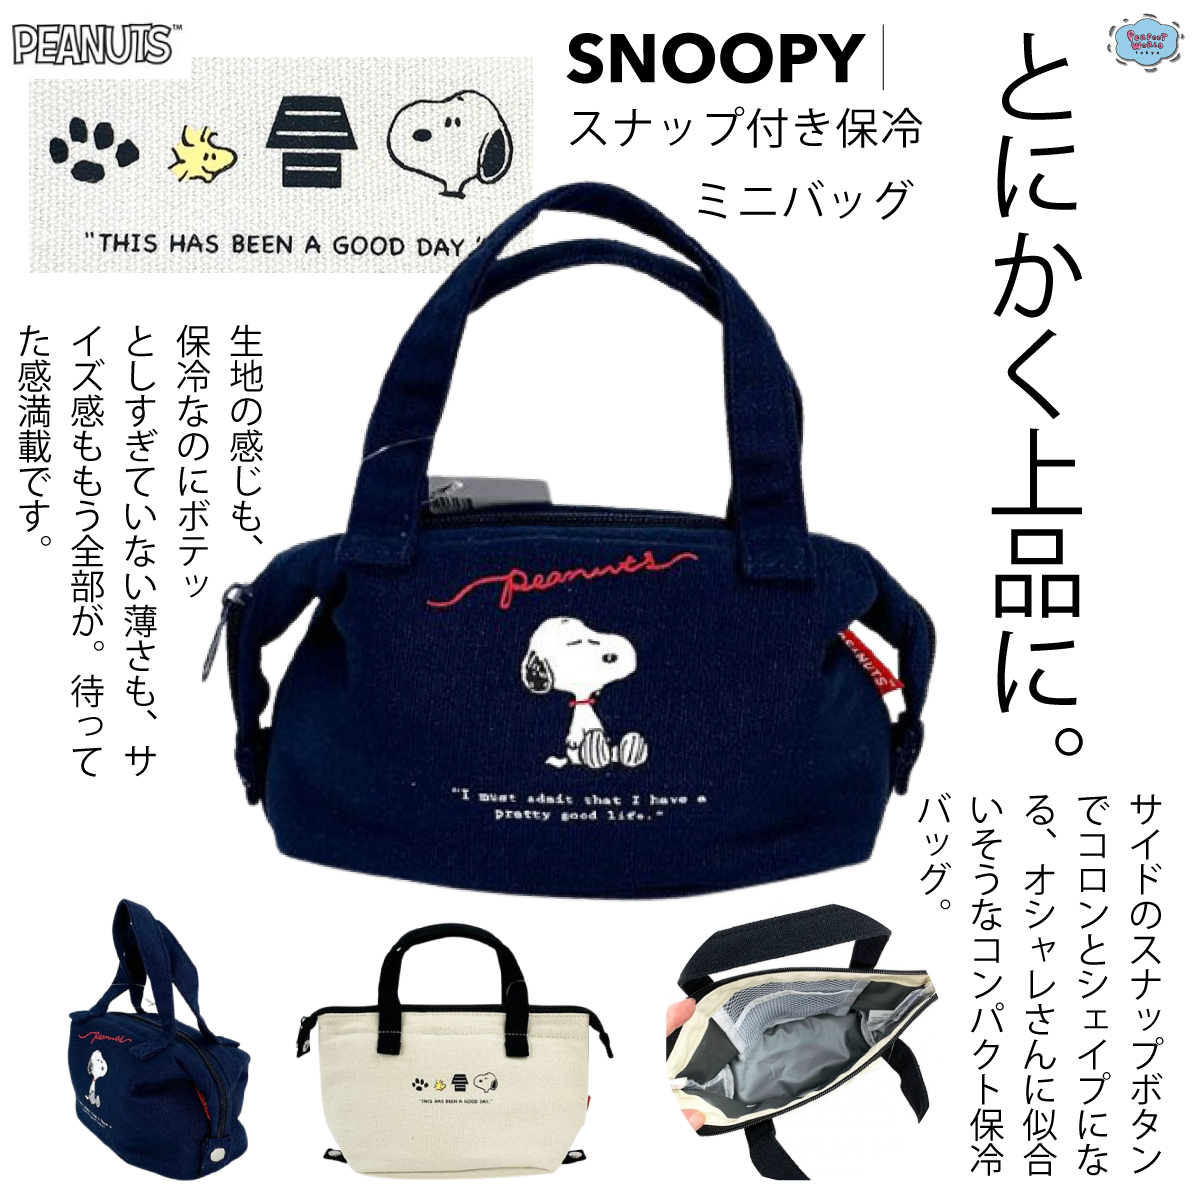 コンパクトで形もコロンと変わる バッグインもできちゃうスヌーピーの保冷バッグ Perfect World Tokyo